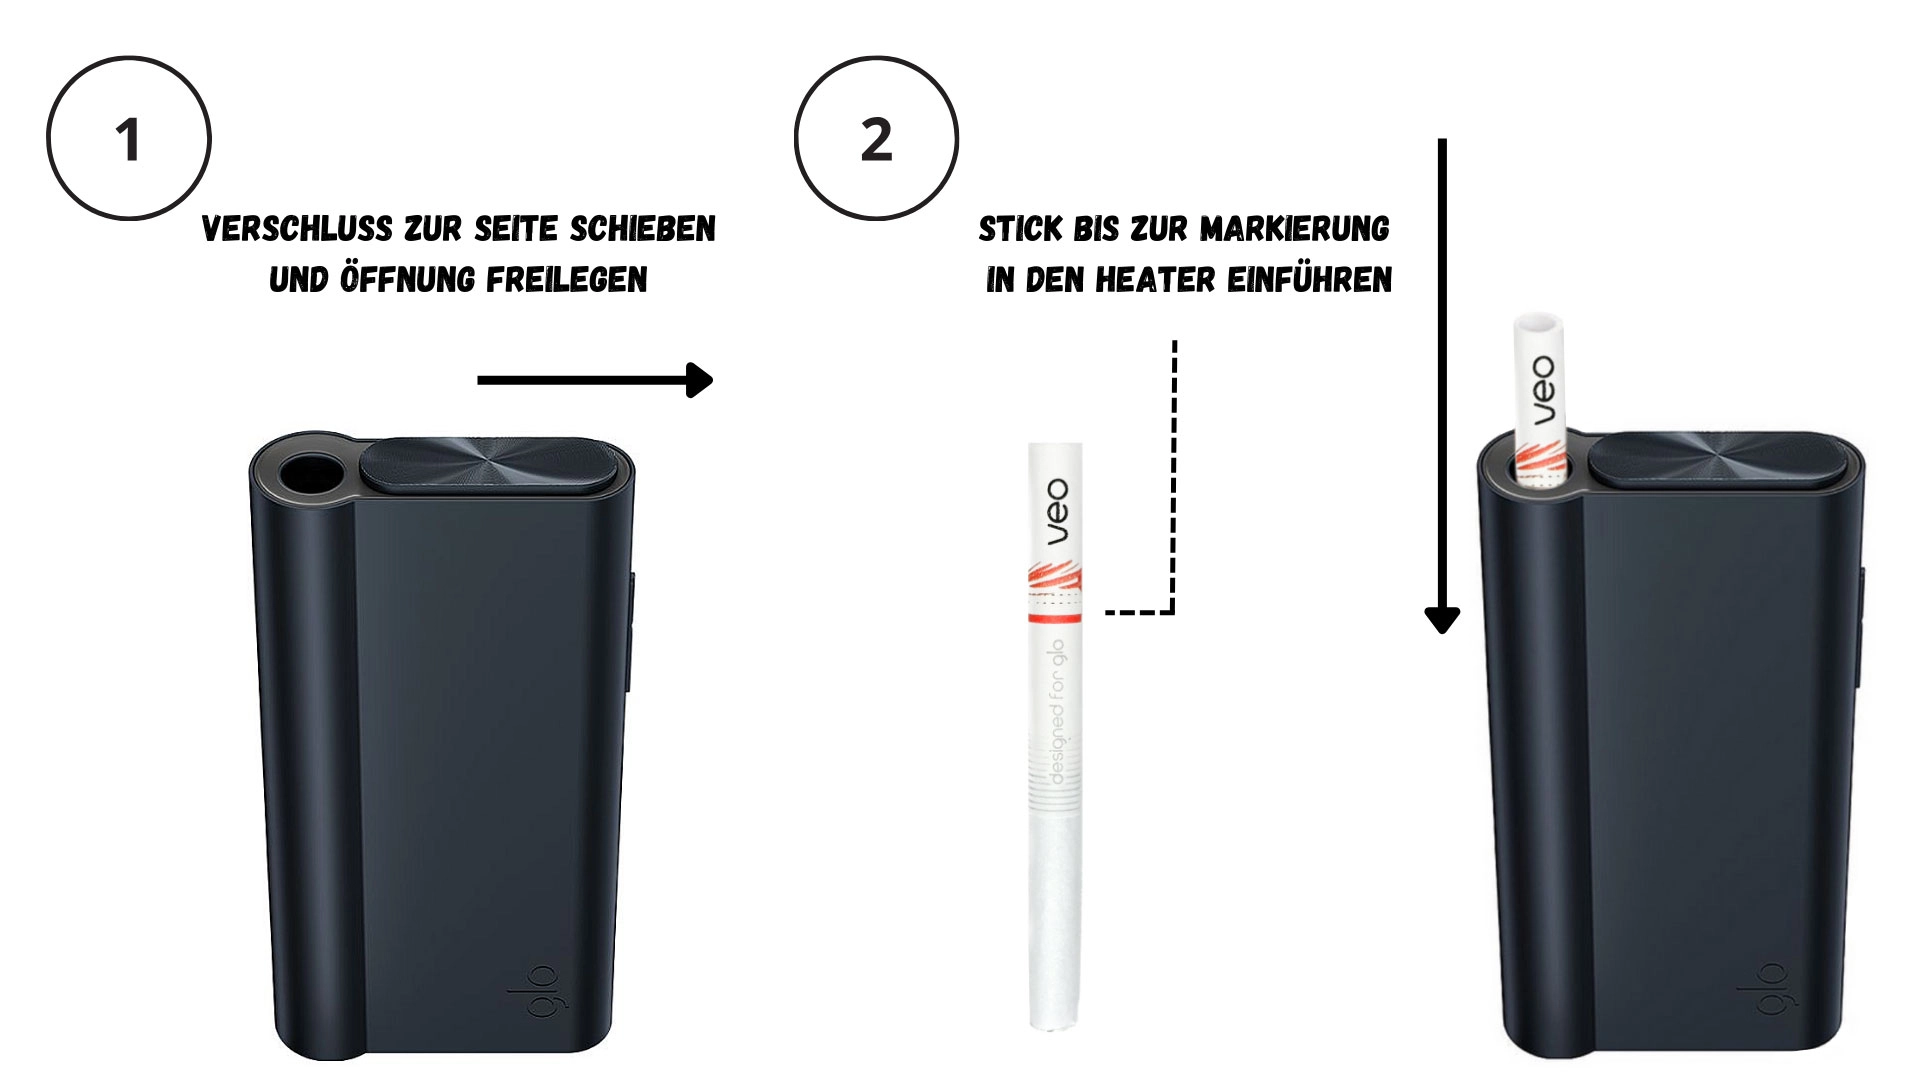 Eine einfache Anleitung, wie man die glo geraete mit den veo Sticks benutzt. Schritt 1 und 2